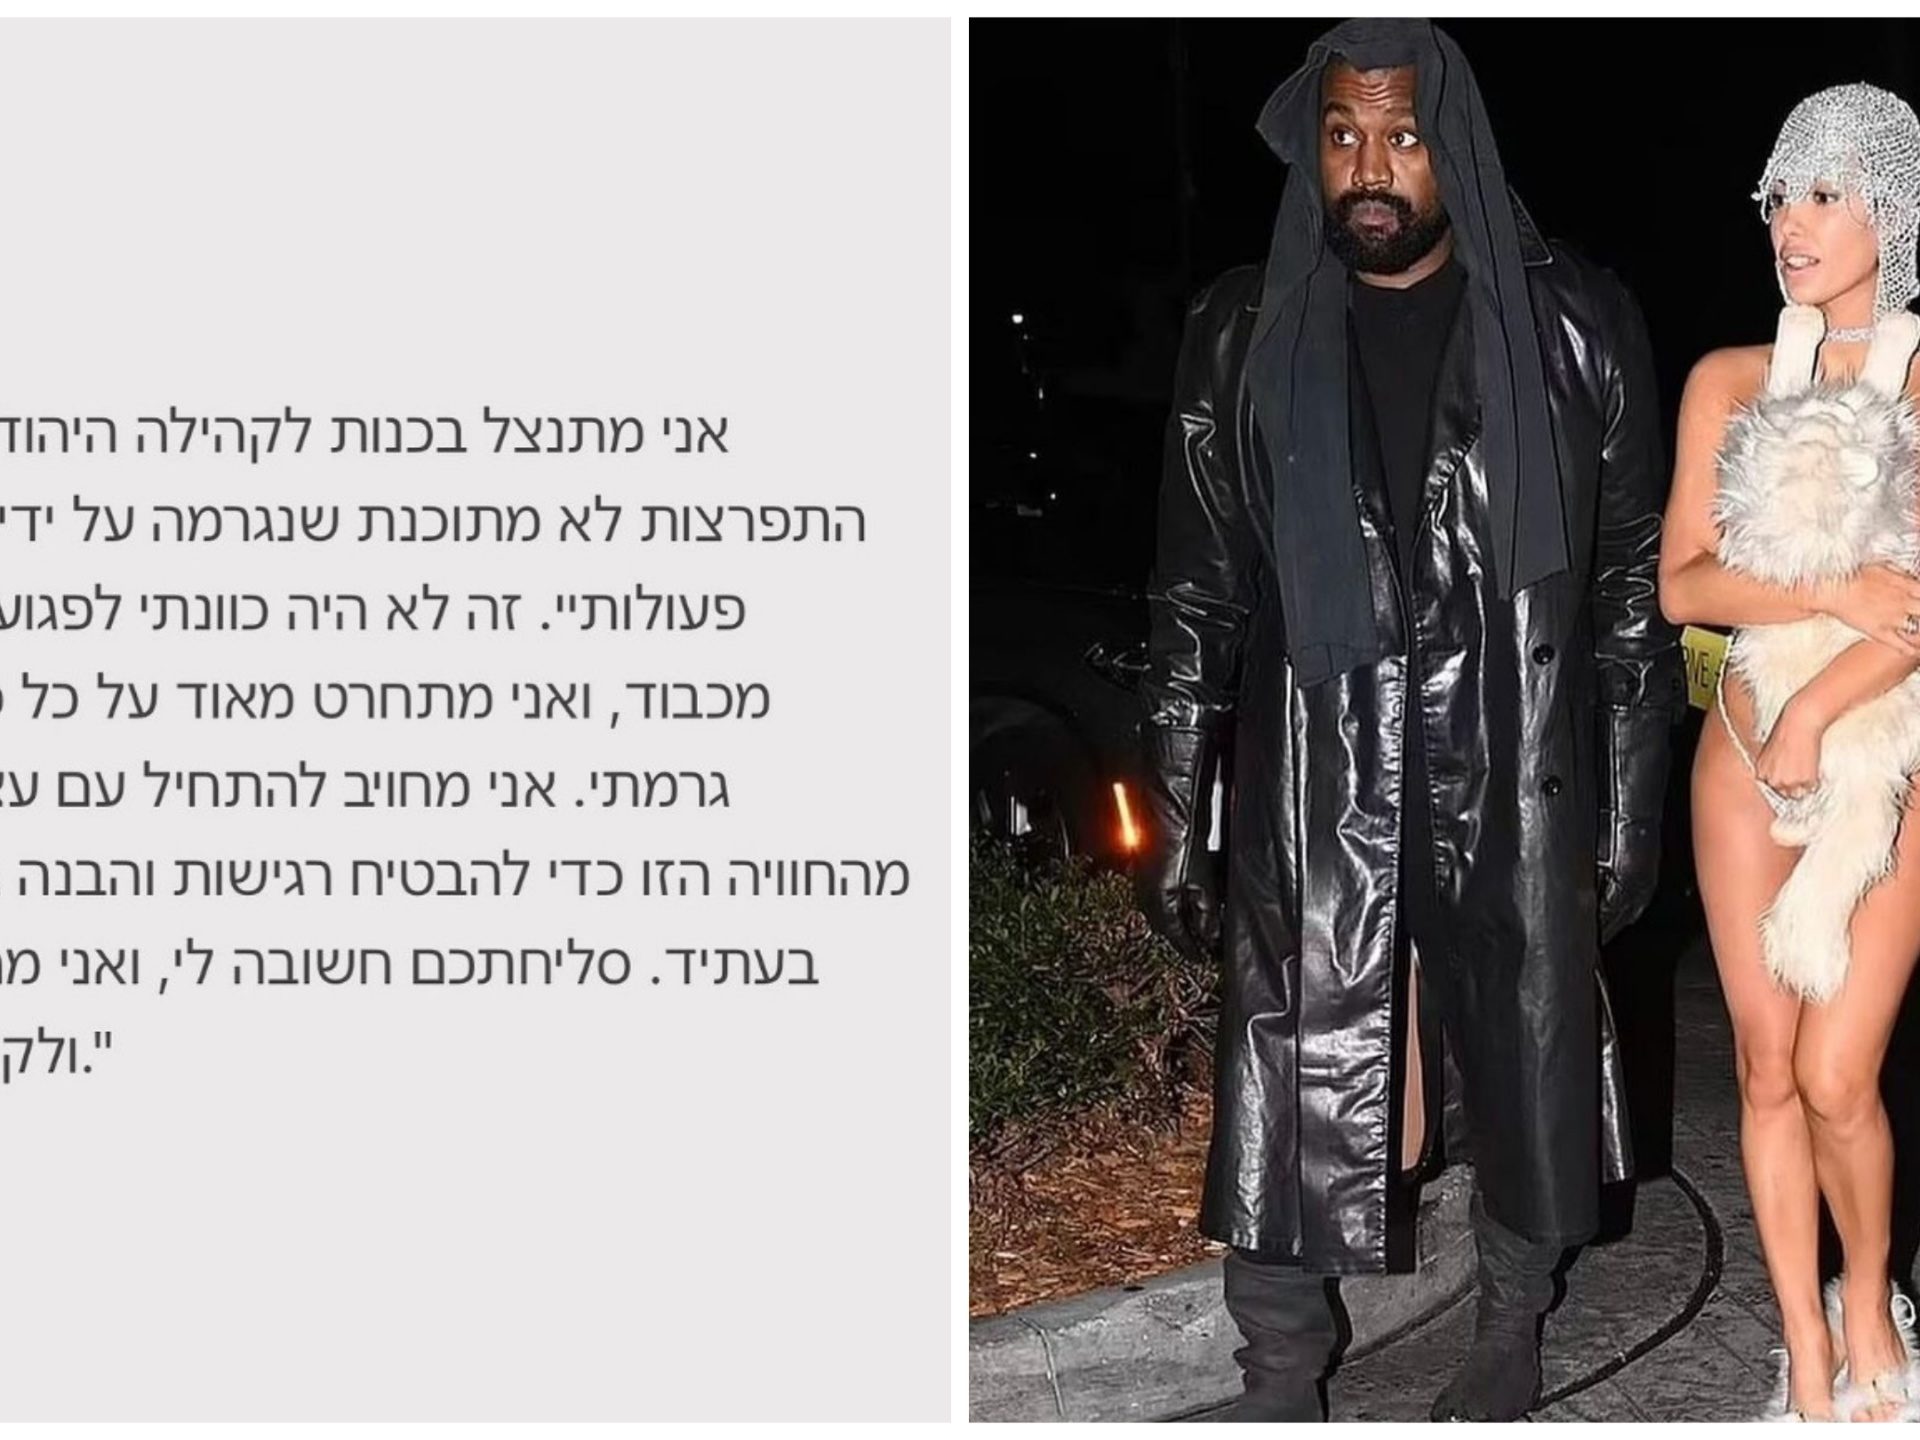 Kanye West torna su Instagram e si scusa con gli ebrei: "Ho problemi mentali"